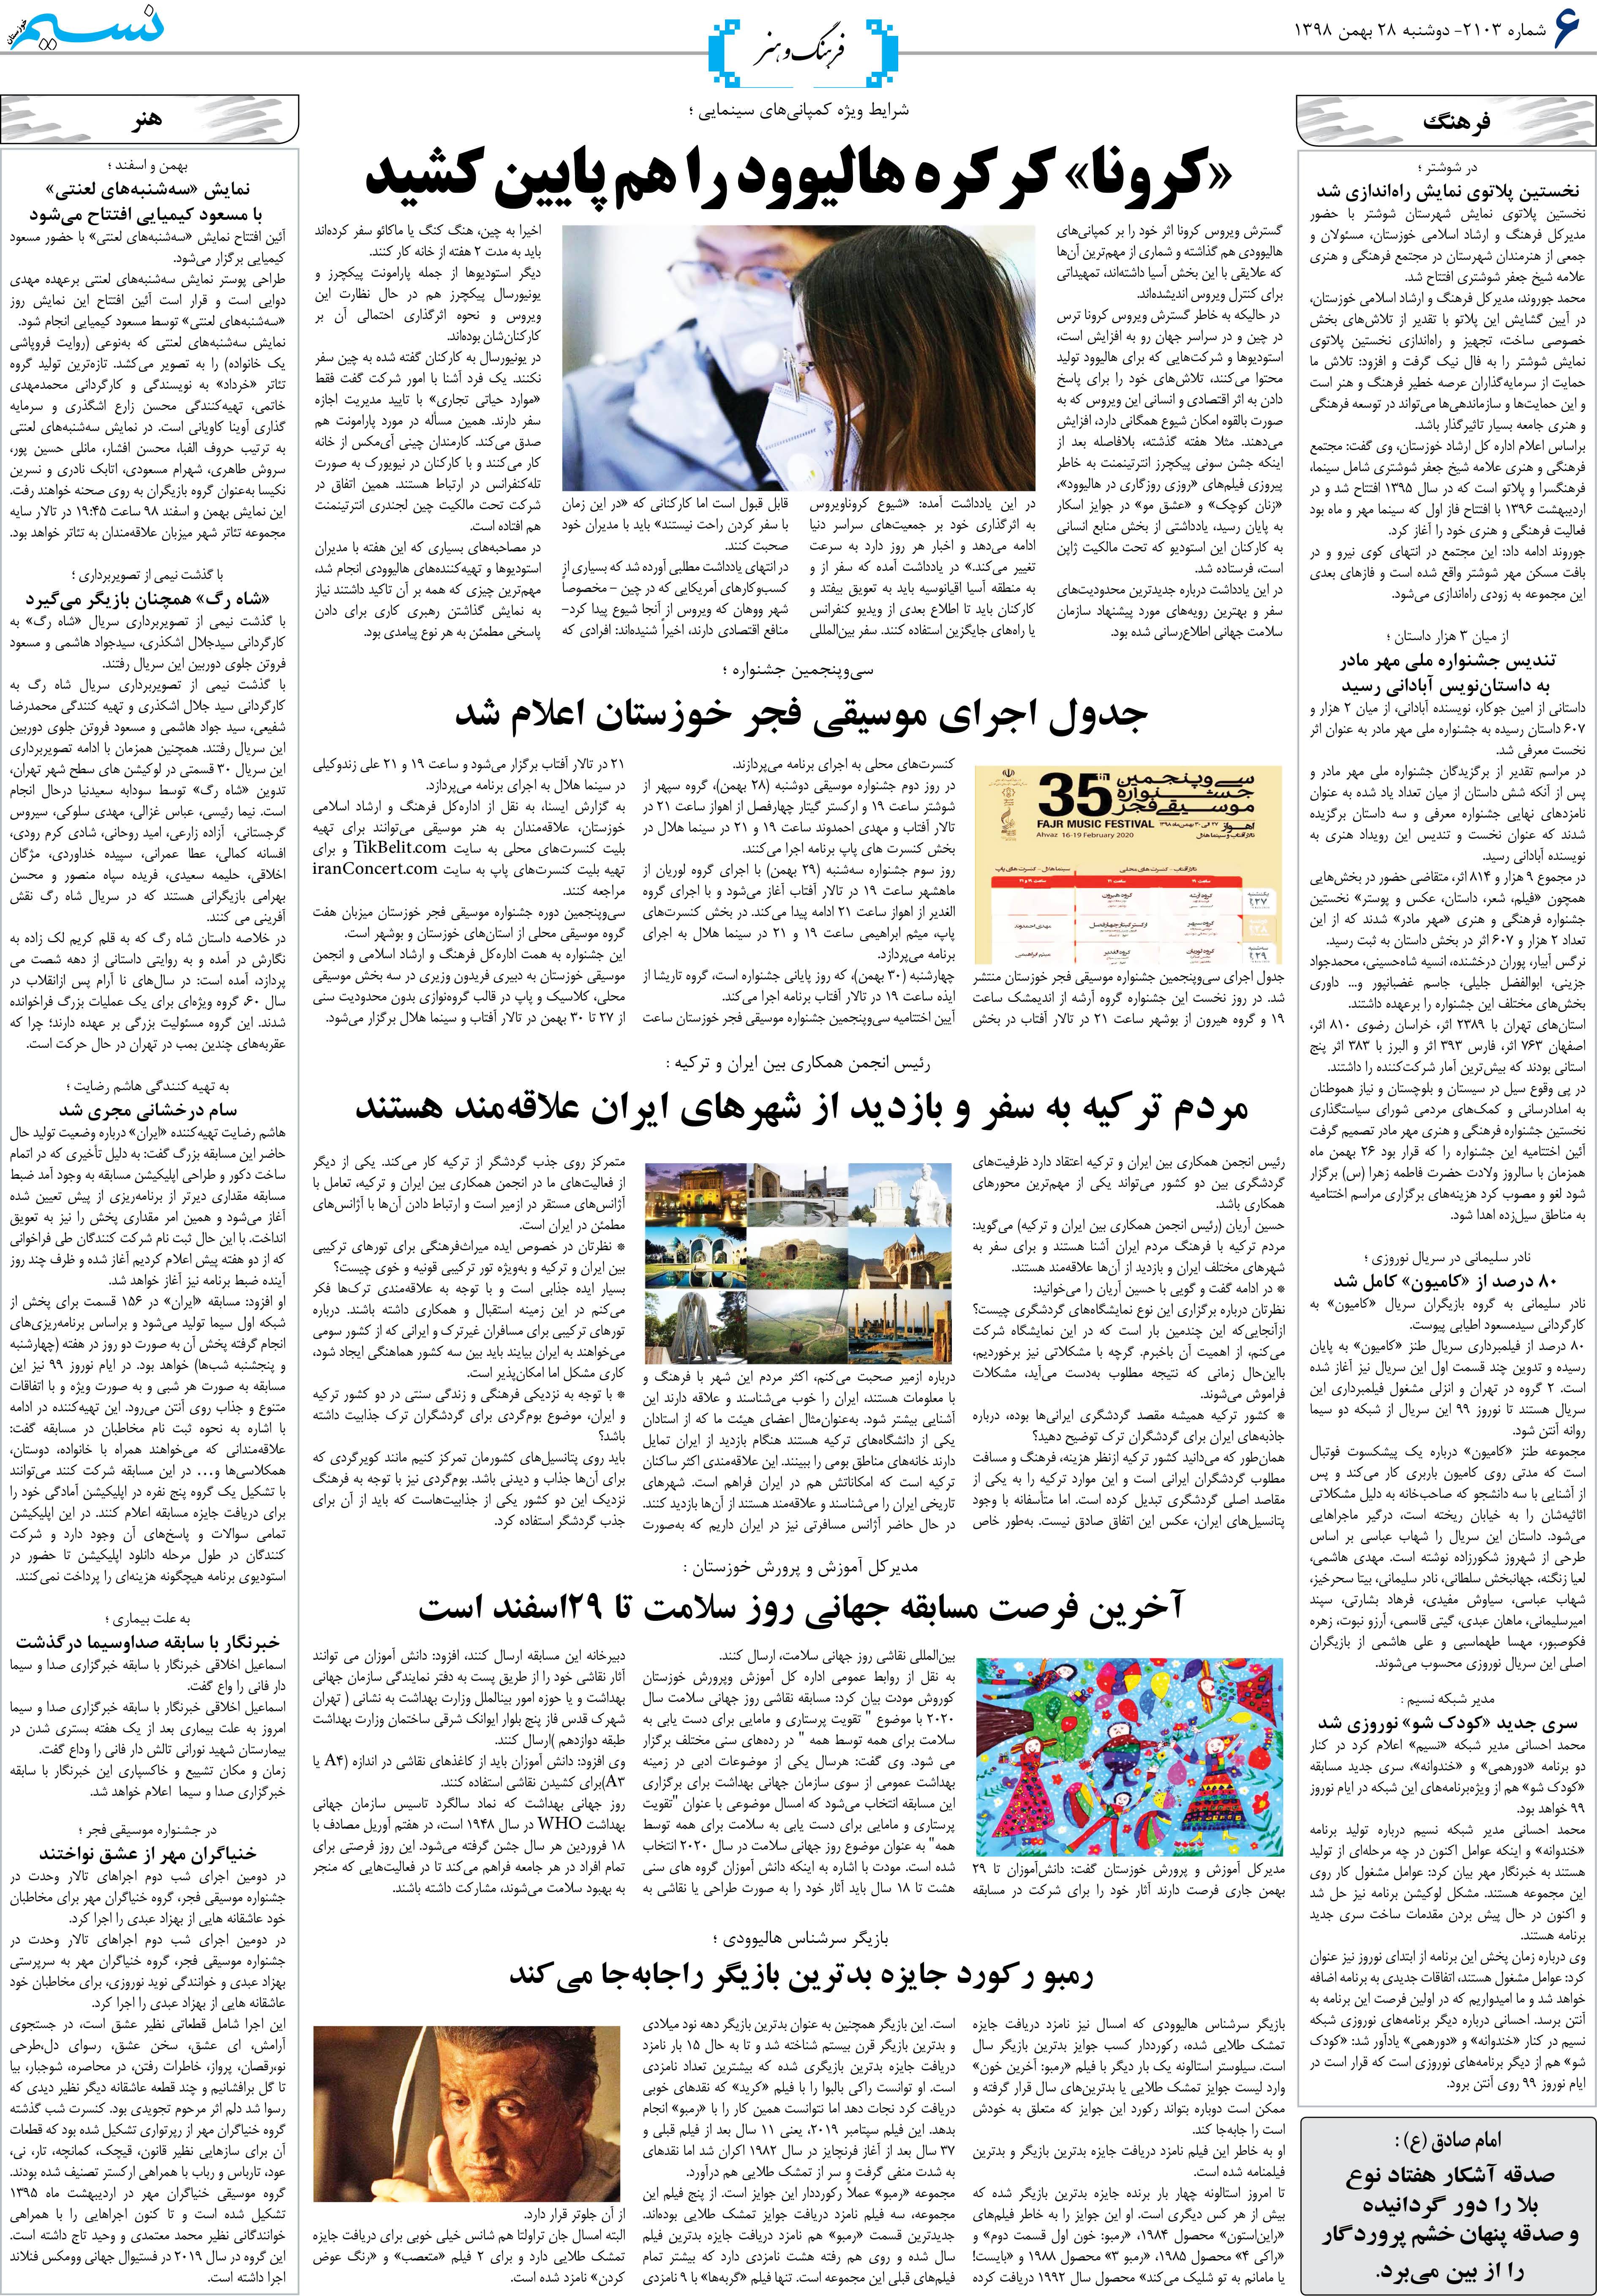 صفحه فرهنگ و هنر روزنامه نسیم شماره 2103